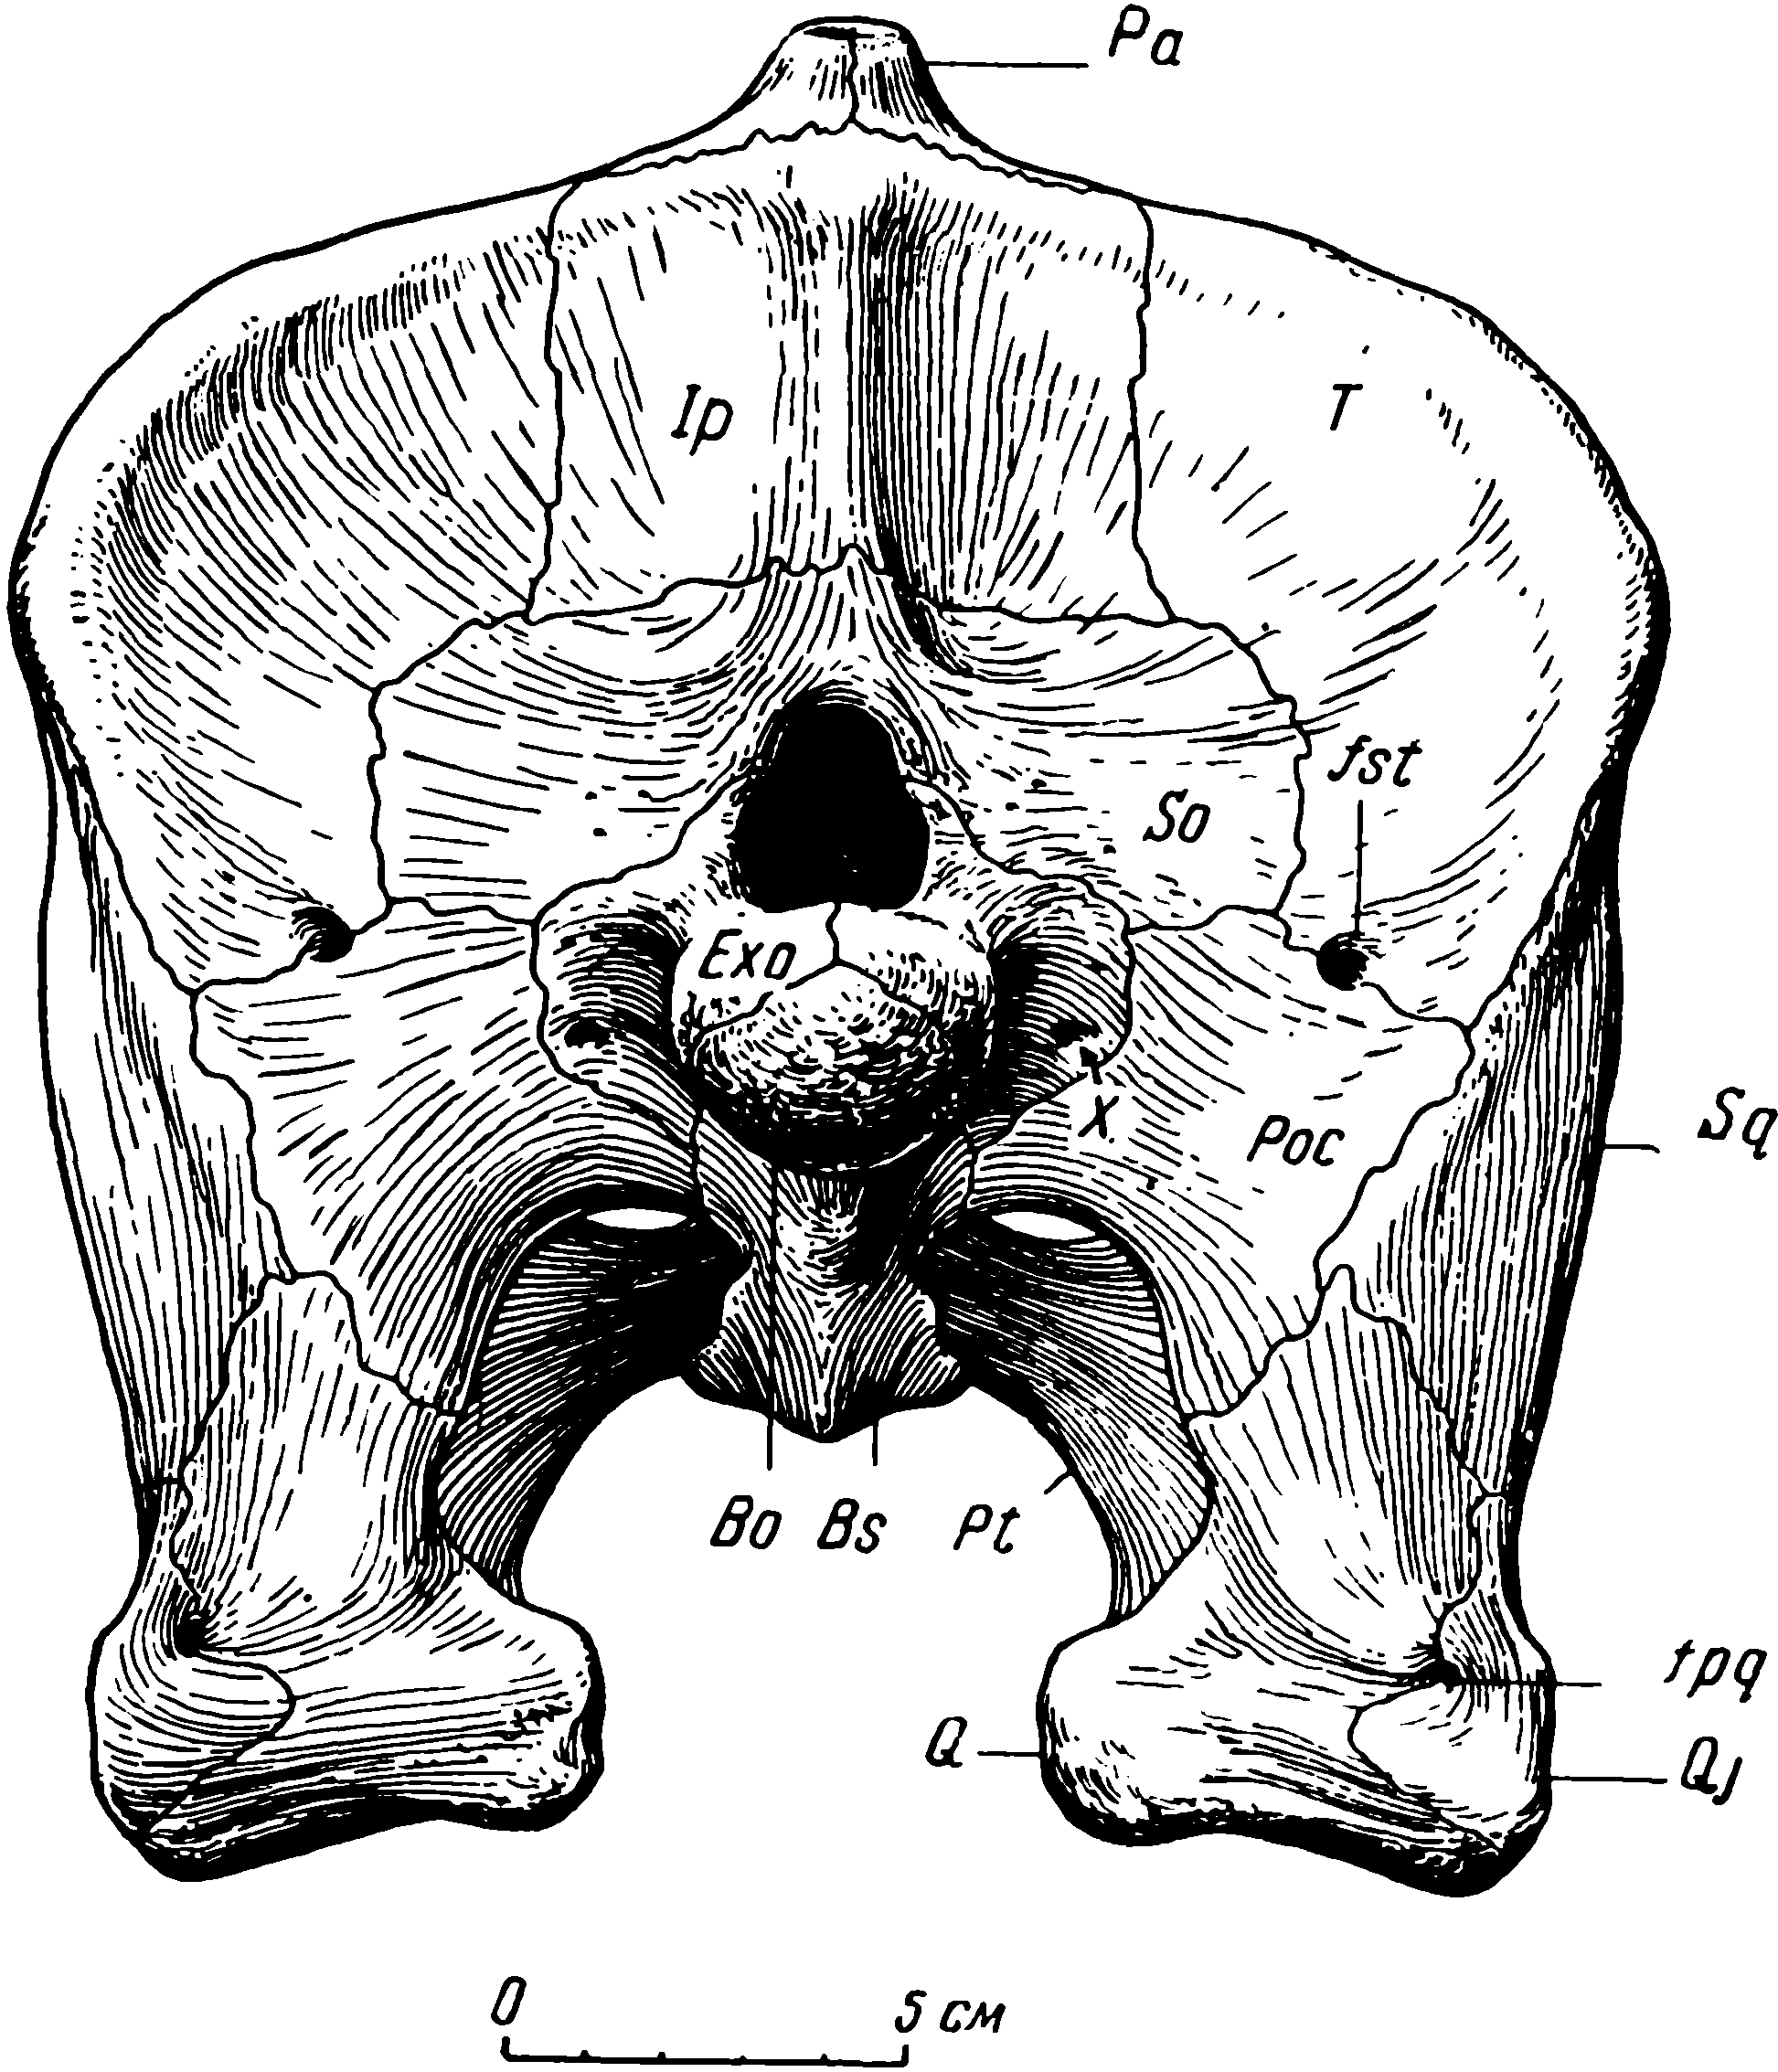 Рис. 6. Deuterosaurus biarmicus Eichw. Реконструкция затылочной поверхности черепа. Обозначения см. рис. 3, 5; кроме того: Ip — interparietale; So — supraoccipitale; Poc — paroccipitale; Exo — exoccipitale; fst — fenestra subtabularis; fpq — foramen paraquadratum; Bo — basioccipitale; Bs — basisphenoideum; Pt — pterygoideum; X — отверстие десятого черепного нерва (n. vagus)